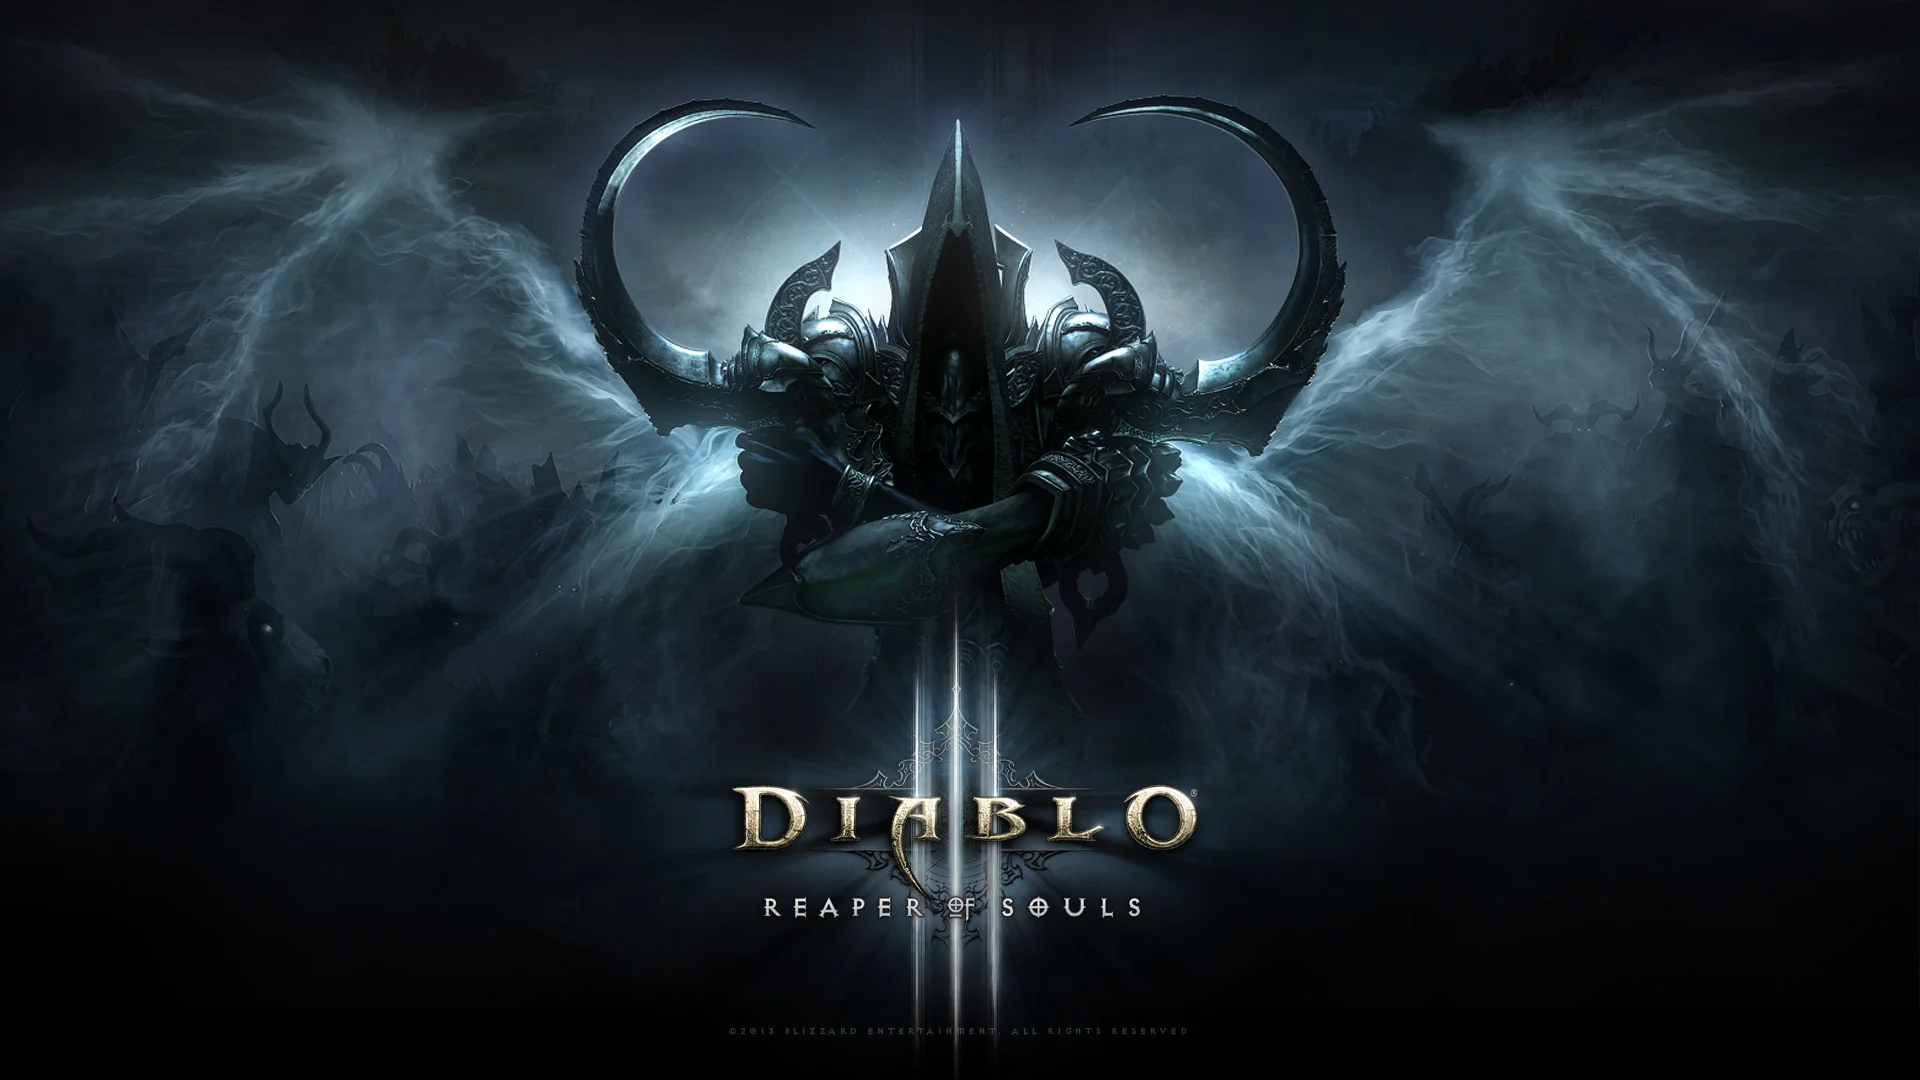 Diablo III Reaper of Souls wallpaper 20-10